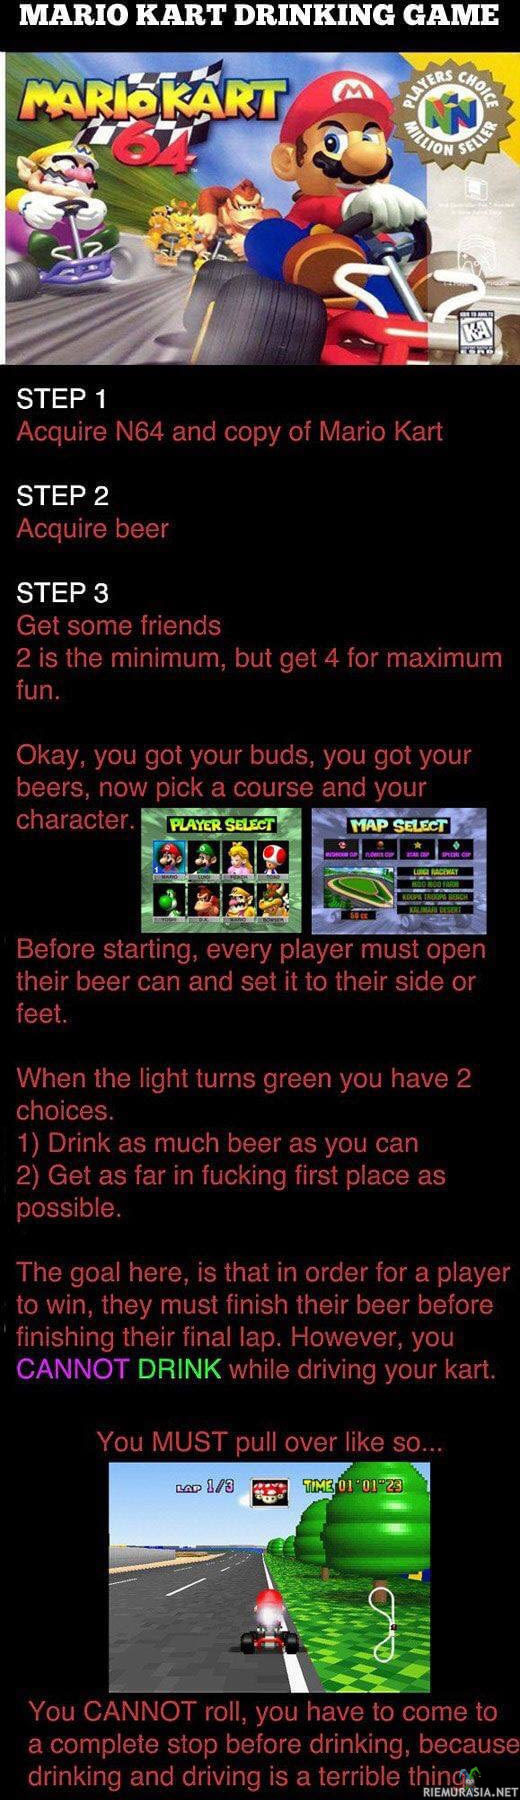 Mario Kart juomapeli - Eri hauska juomapeli, joka muuttuu haasteelliseksi jokaisen pelatun pelin jälkeen.